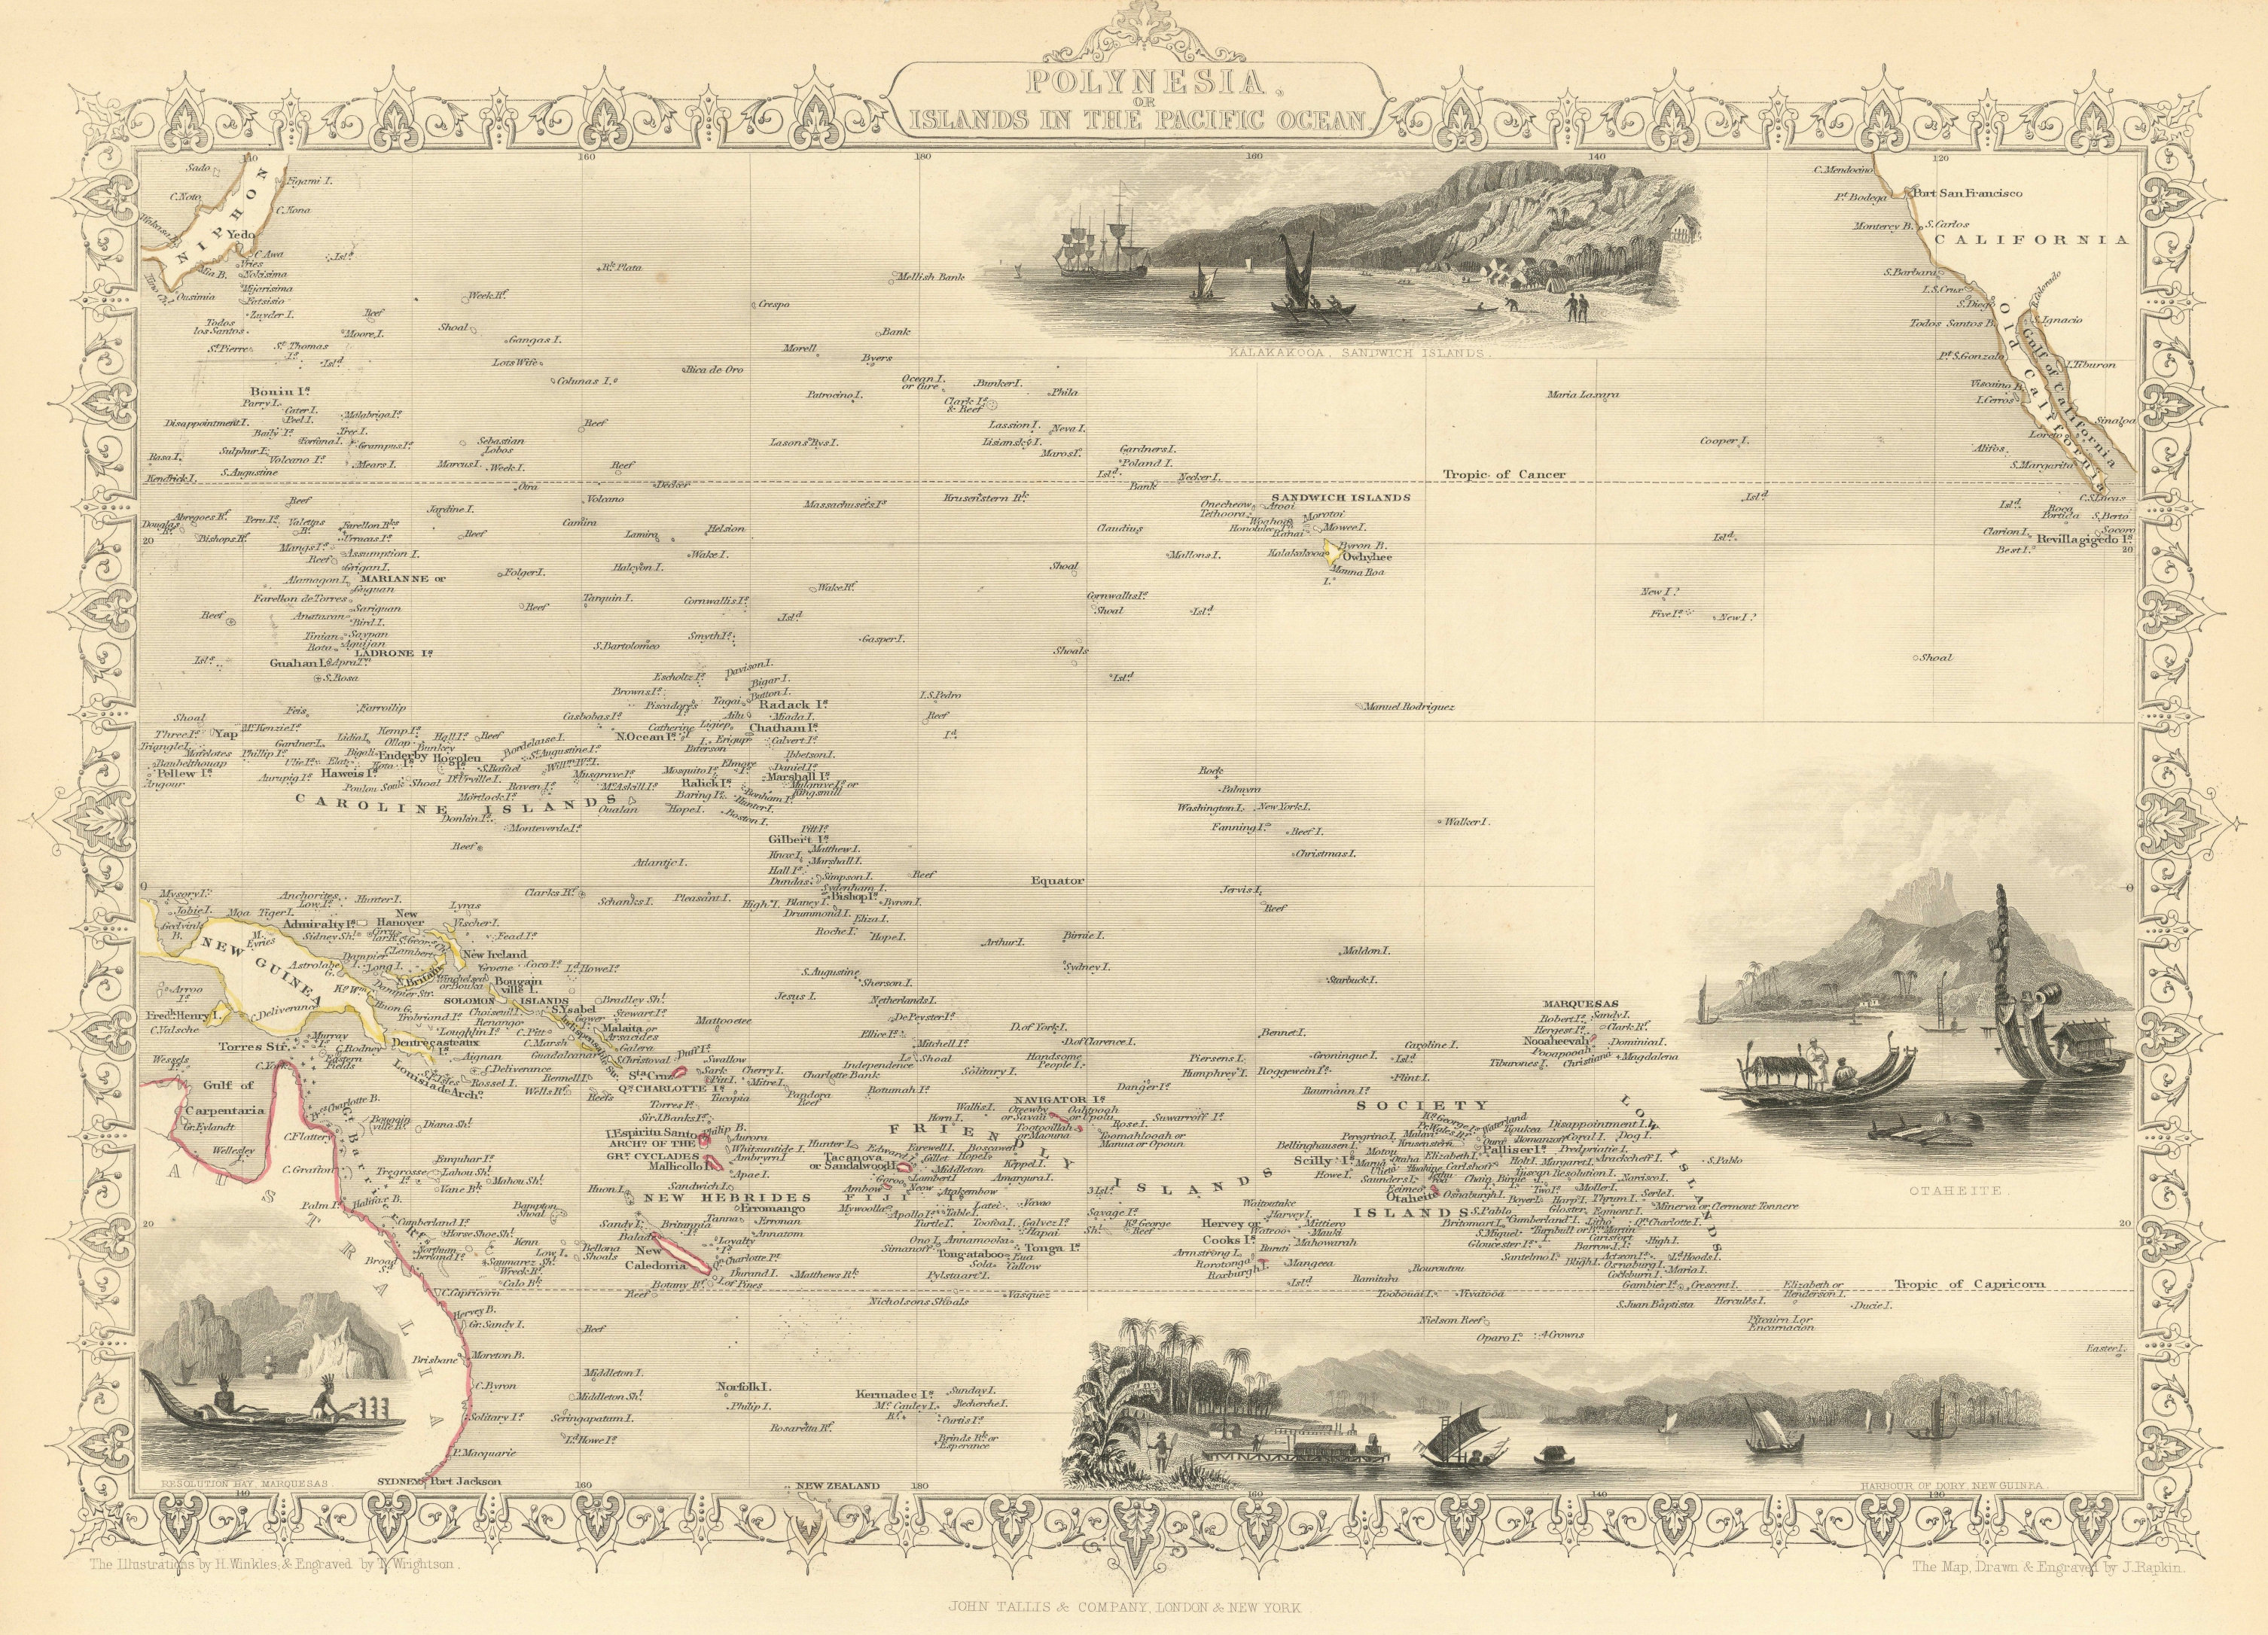 POLYNESIA/PACIFIC ISLANDS. inc Sandwich/Hawaiian islands. RAPKIN/TALLIS 1851 map